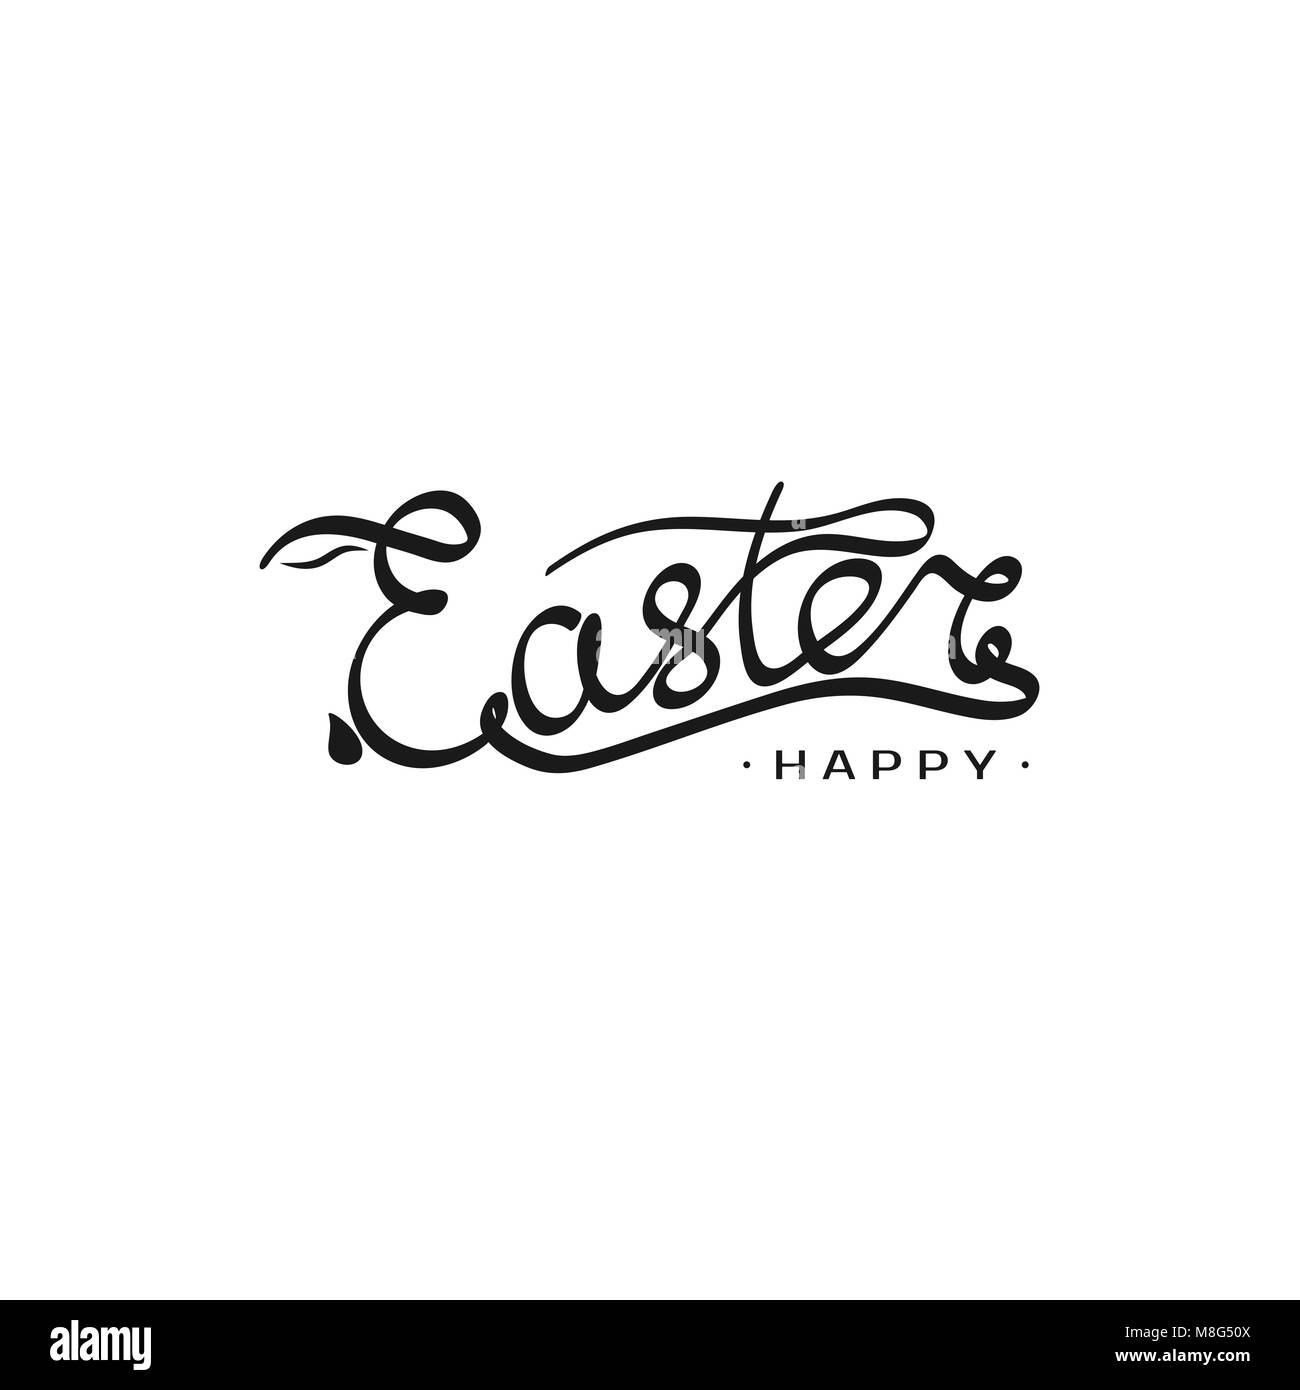 Disegnata a mano iscrizione modello di Pasqua con silhouette di coniglio nella lettera E. illustrazione vettoriale per la progettazione headline, banner e la postcard Illustrazione Vettoriale